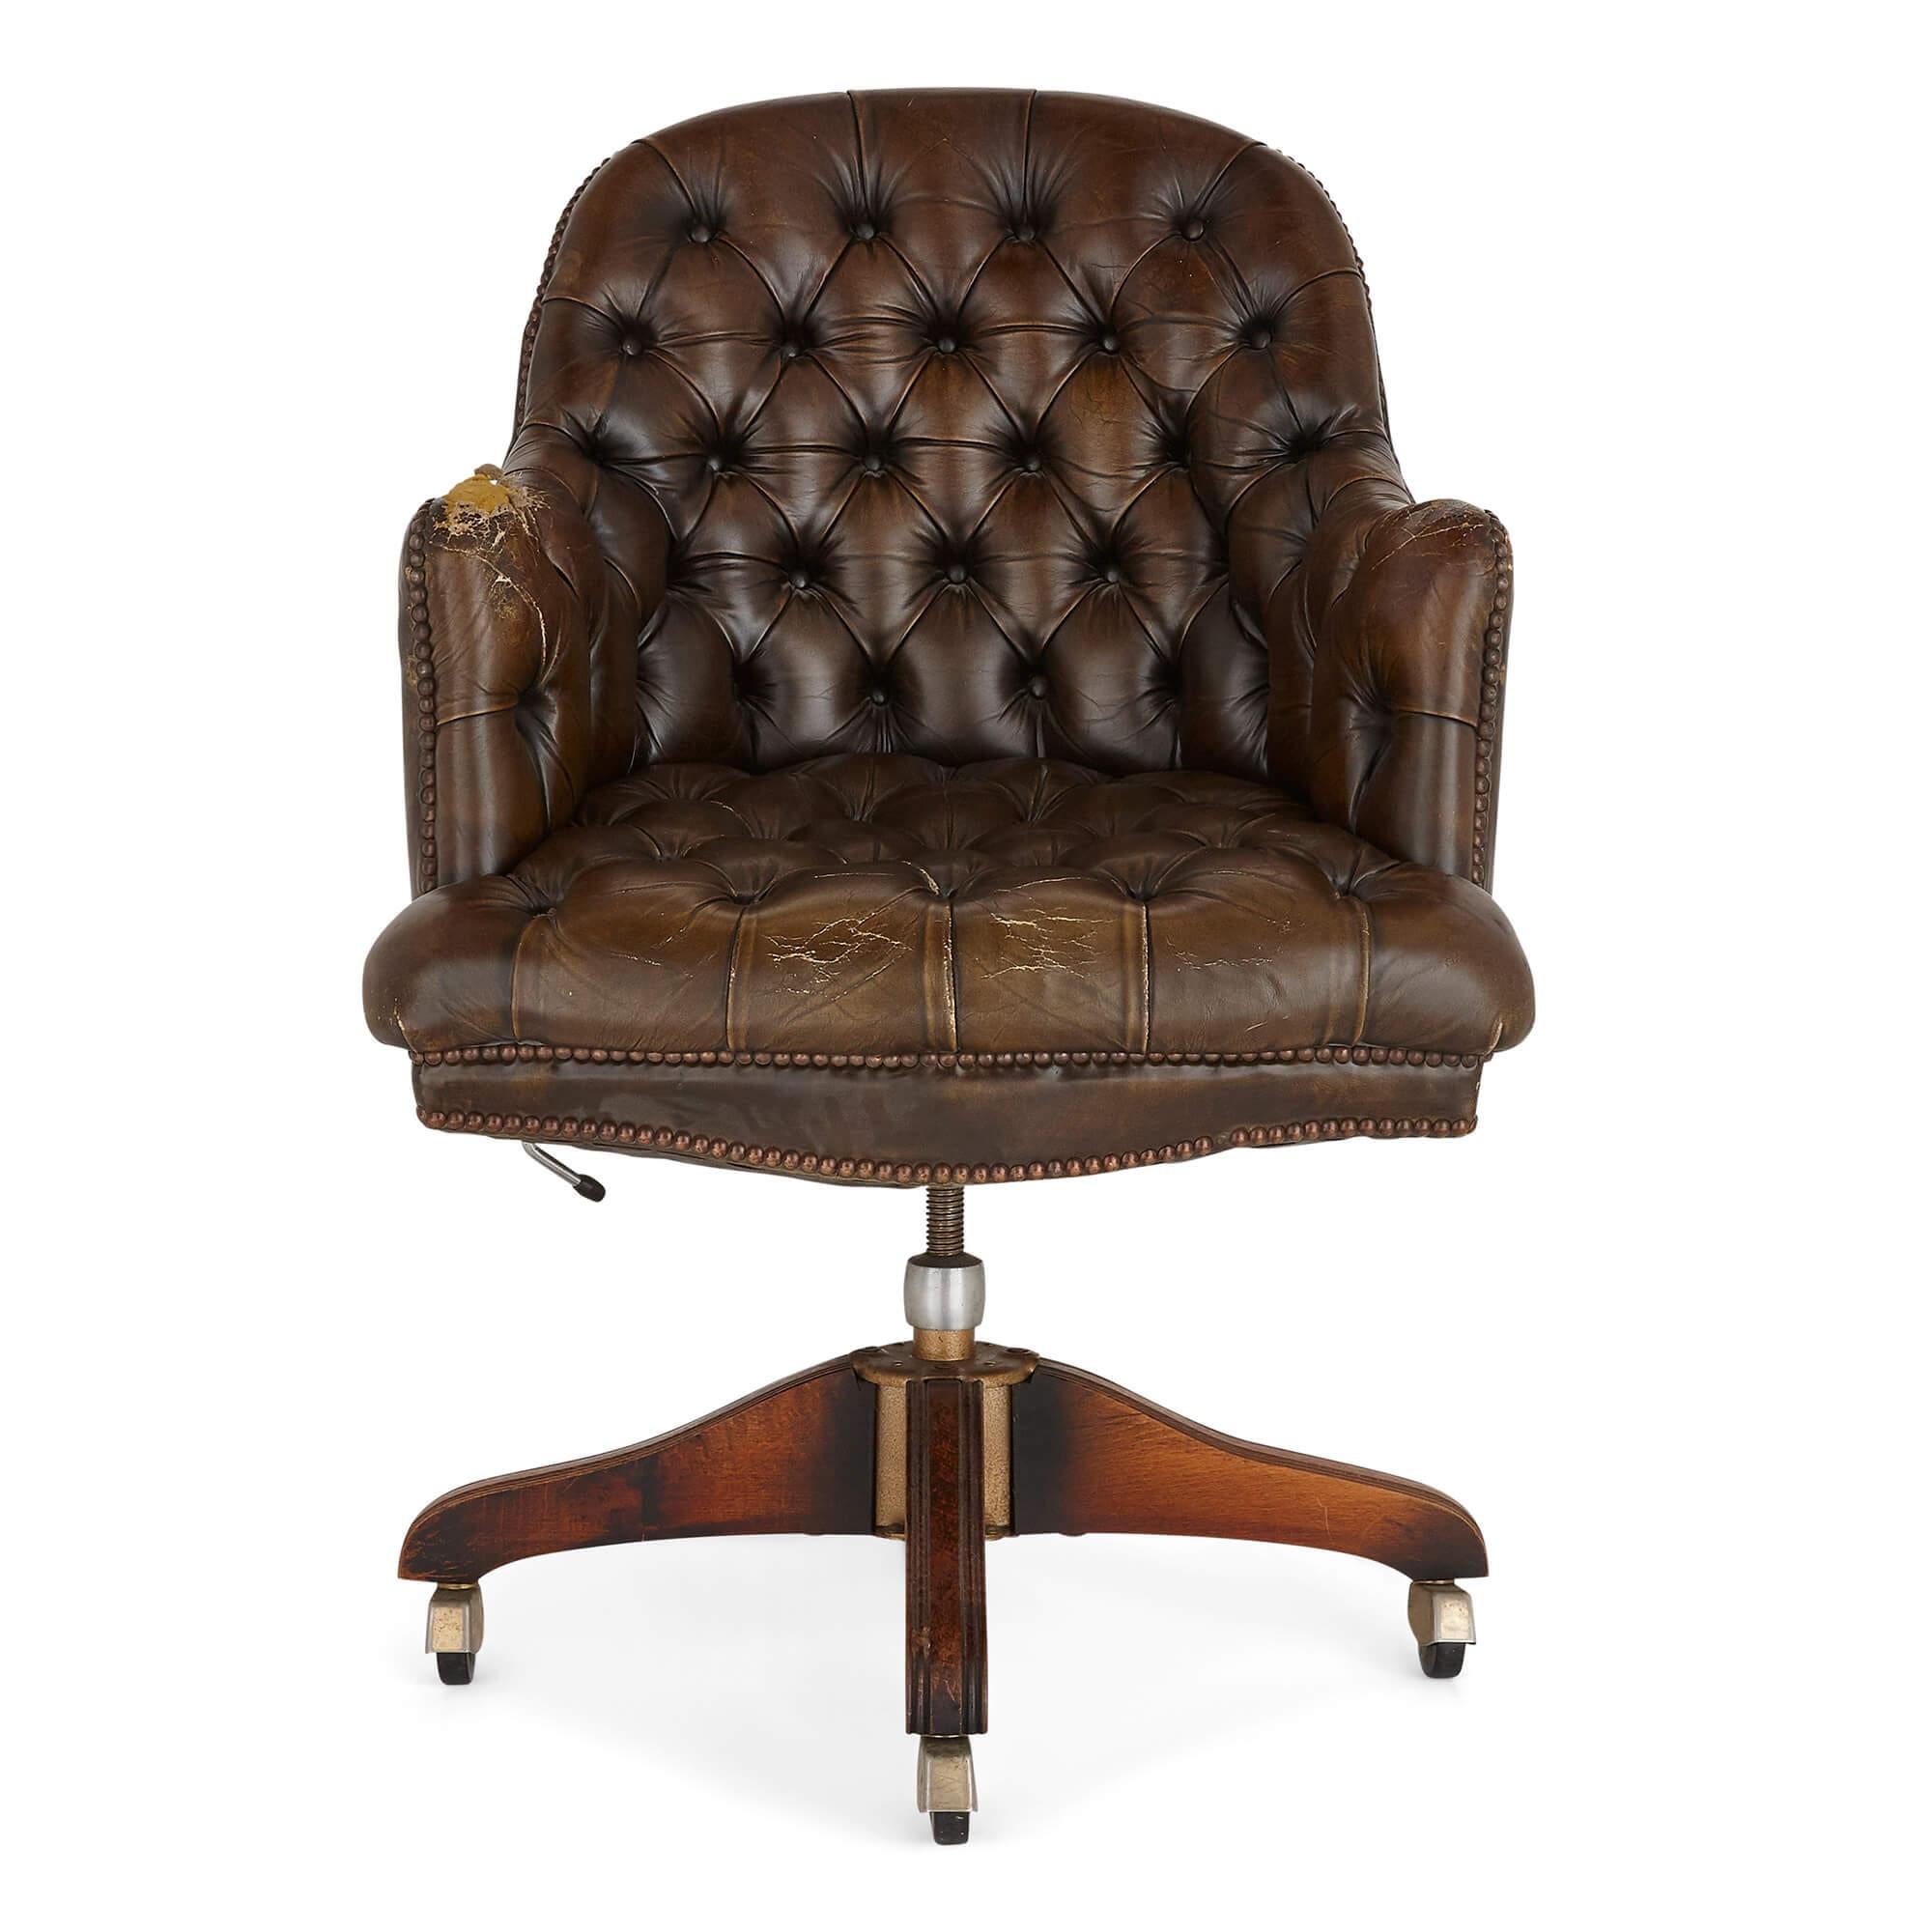 Chaise de bureau en cuir anglais de style géorgien
Anglais, 20ème siècle
Mesures : Hauteur 138cm, largeur 45cm, profondeur 40cm

Cette chaise de bureau est fabriquée dans le style géorgien. Le fauteuil est doté d'une assise en cuir, d'un dossier